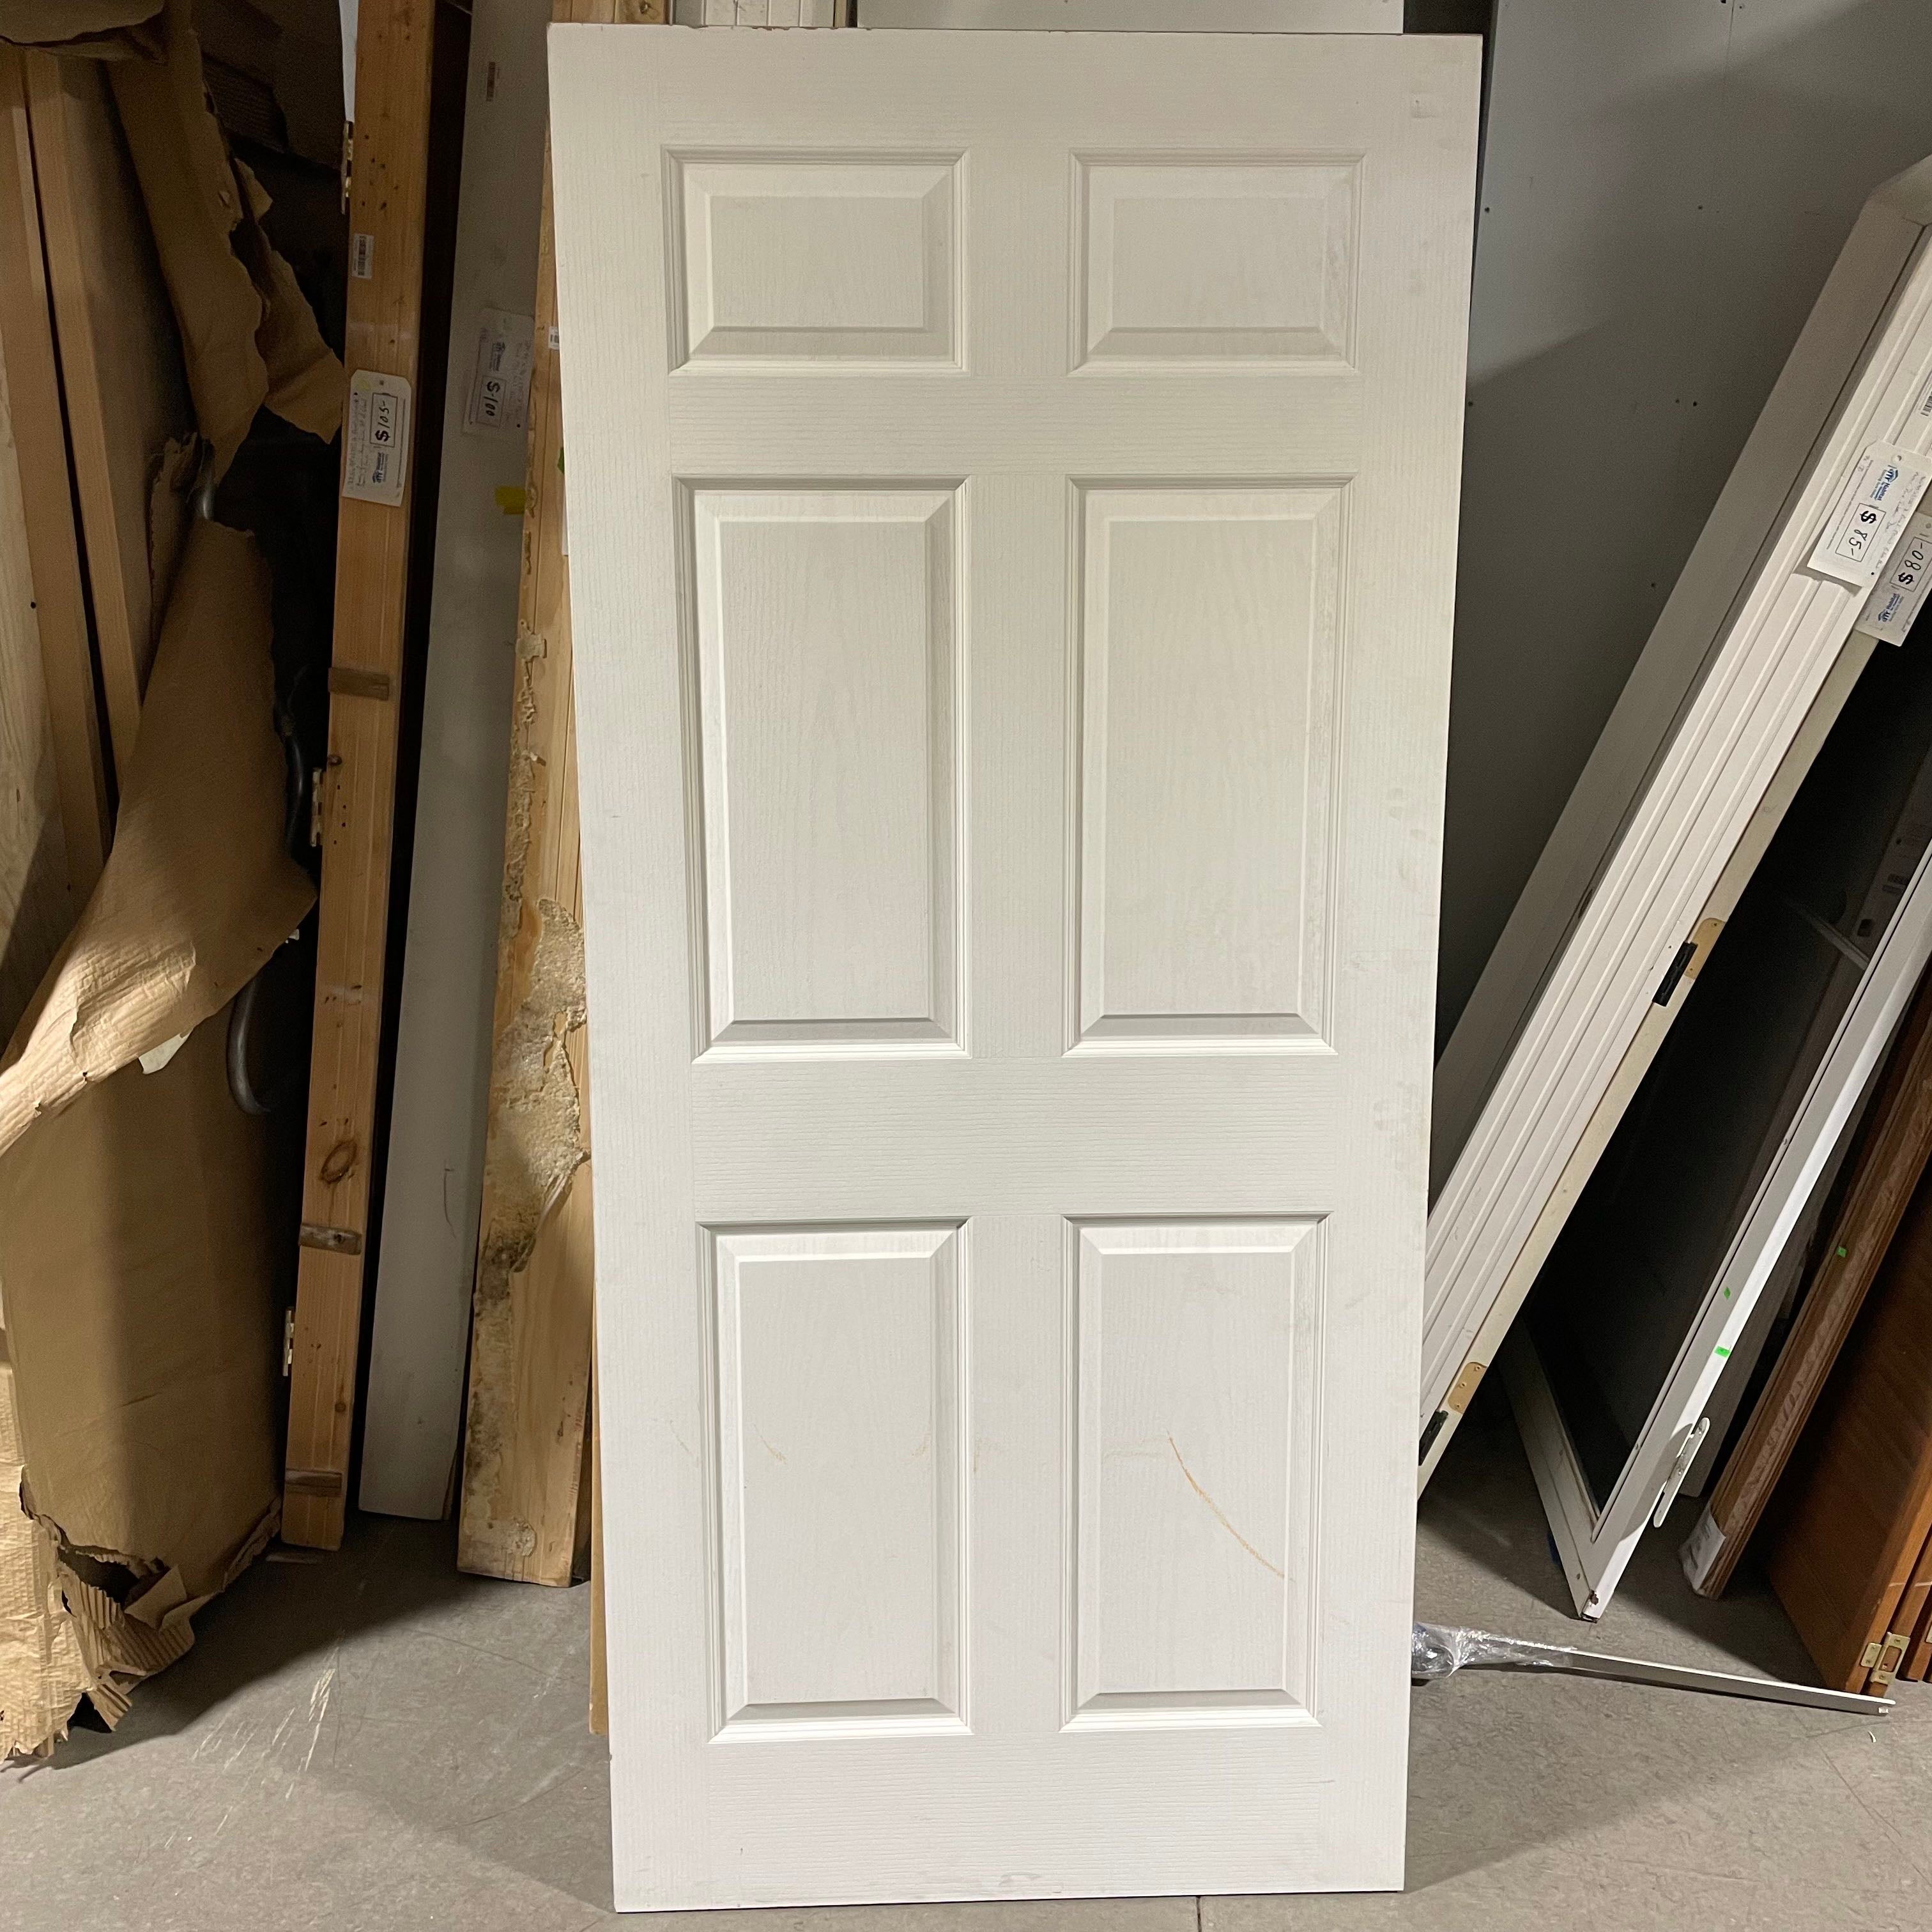 36"x 80"x 1.375" 6 Panel Primed Hollow Core Interior Door